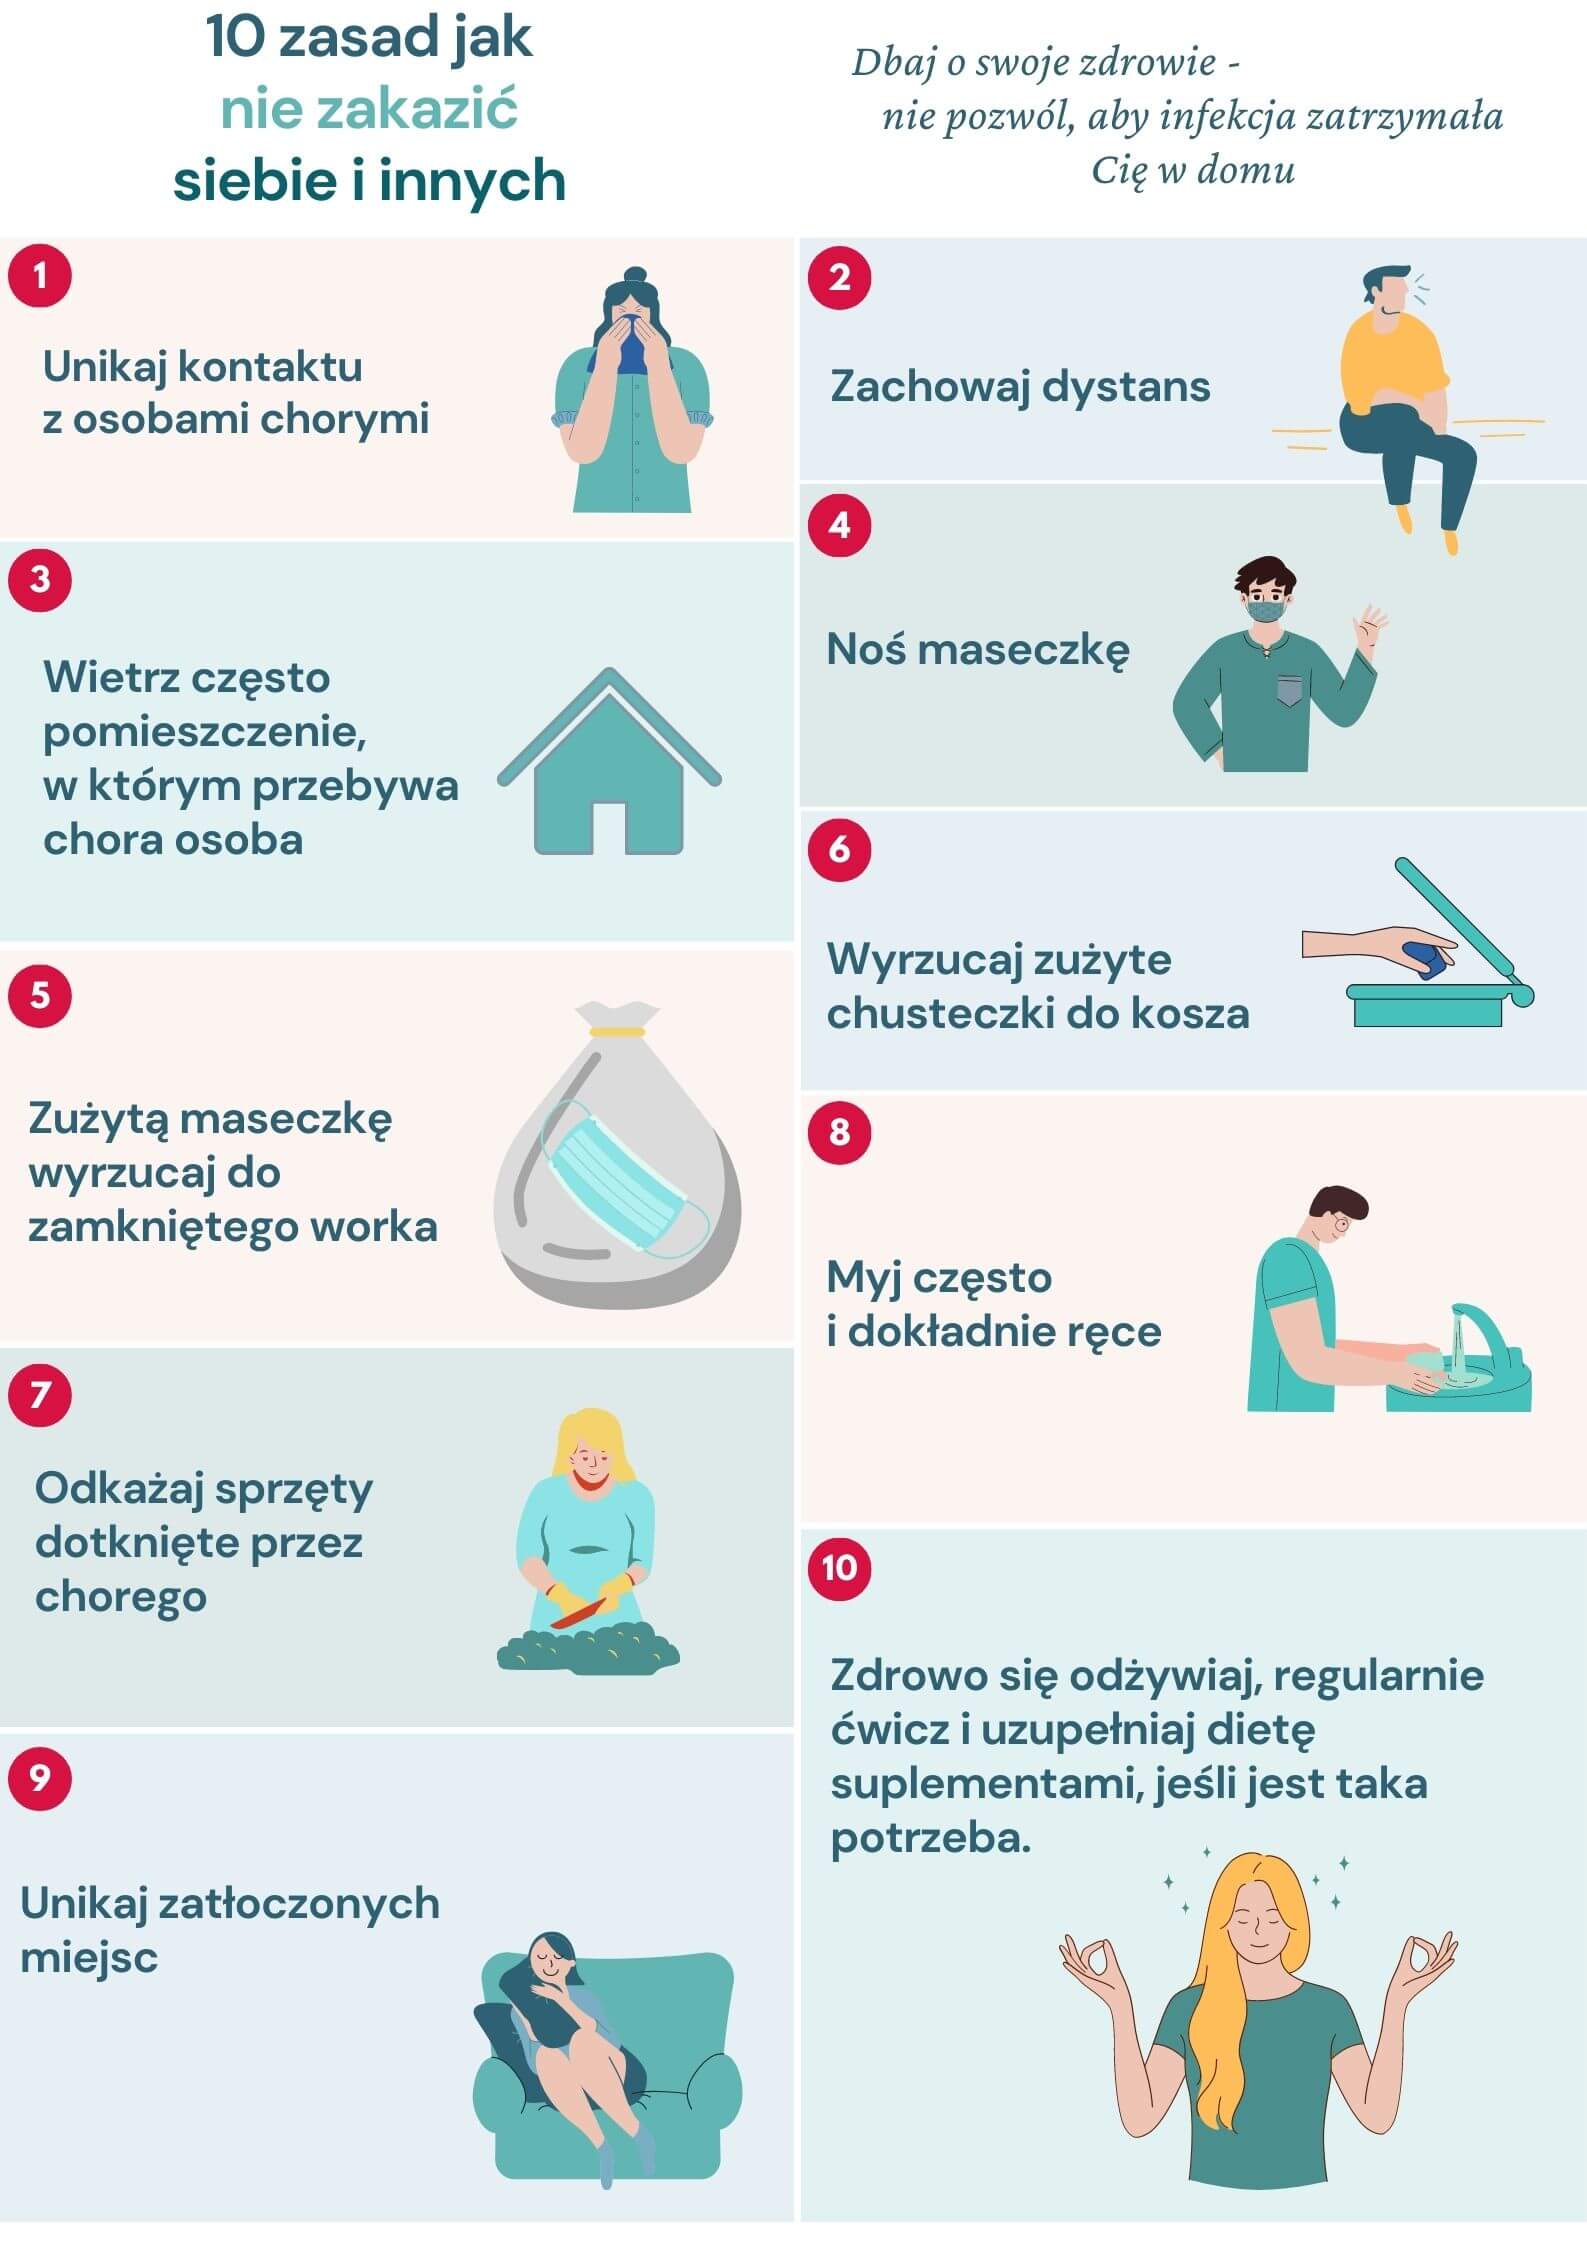 10 zasad jak unikać infekcji